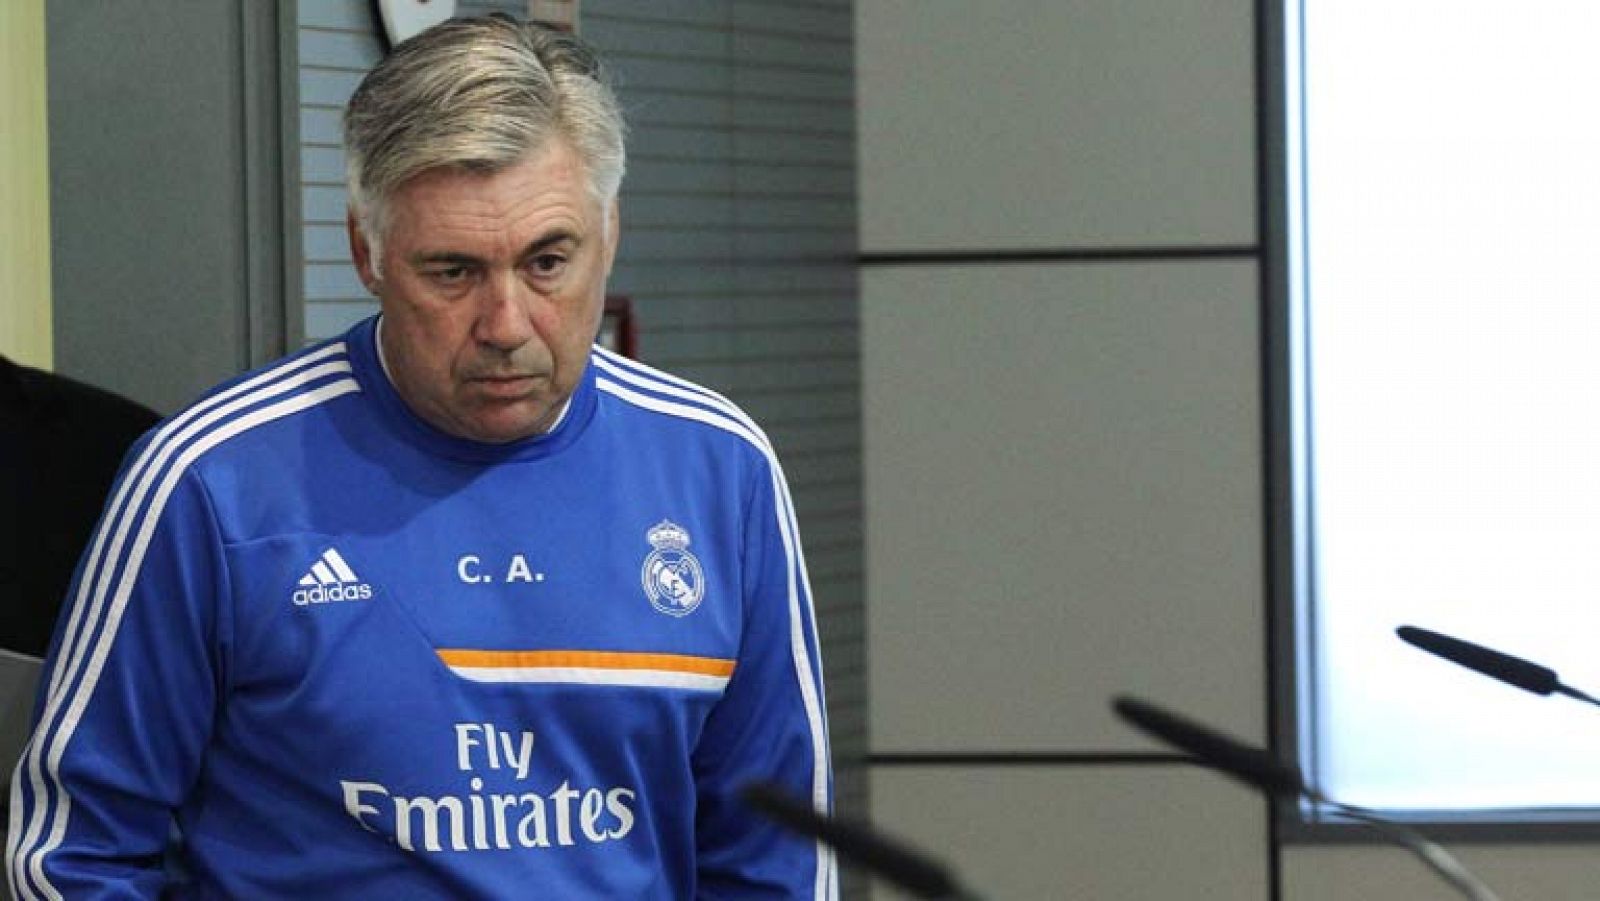 El técnico del Real Madrid, Carlo Ancelotti, ha negado la posible salida de Sergio Ramos del club blanco y ha confirmado que Cristiano Ronaldo no jugará este sábado frente al Valladolid para no correr riesgos. 